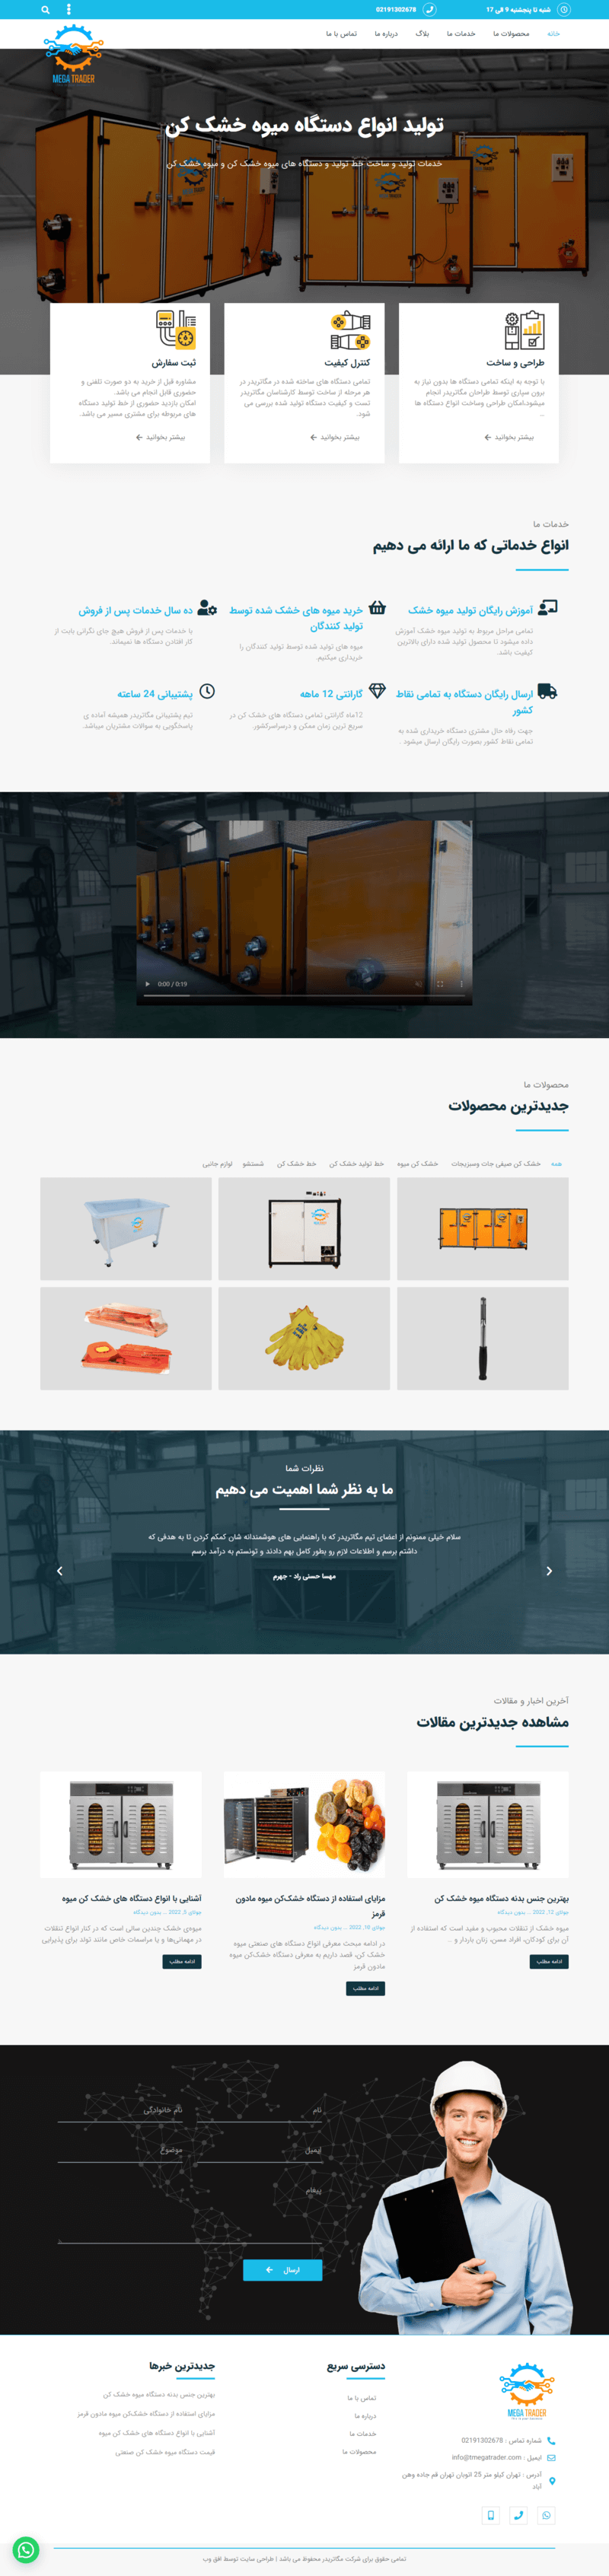 طراحی سایت شرکتی مگاتریدر